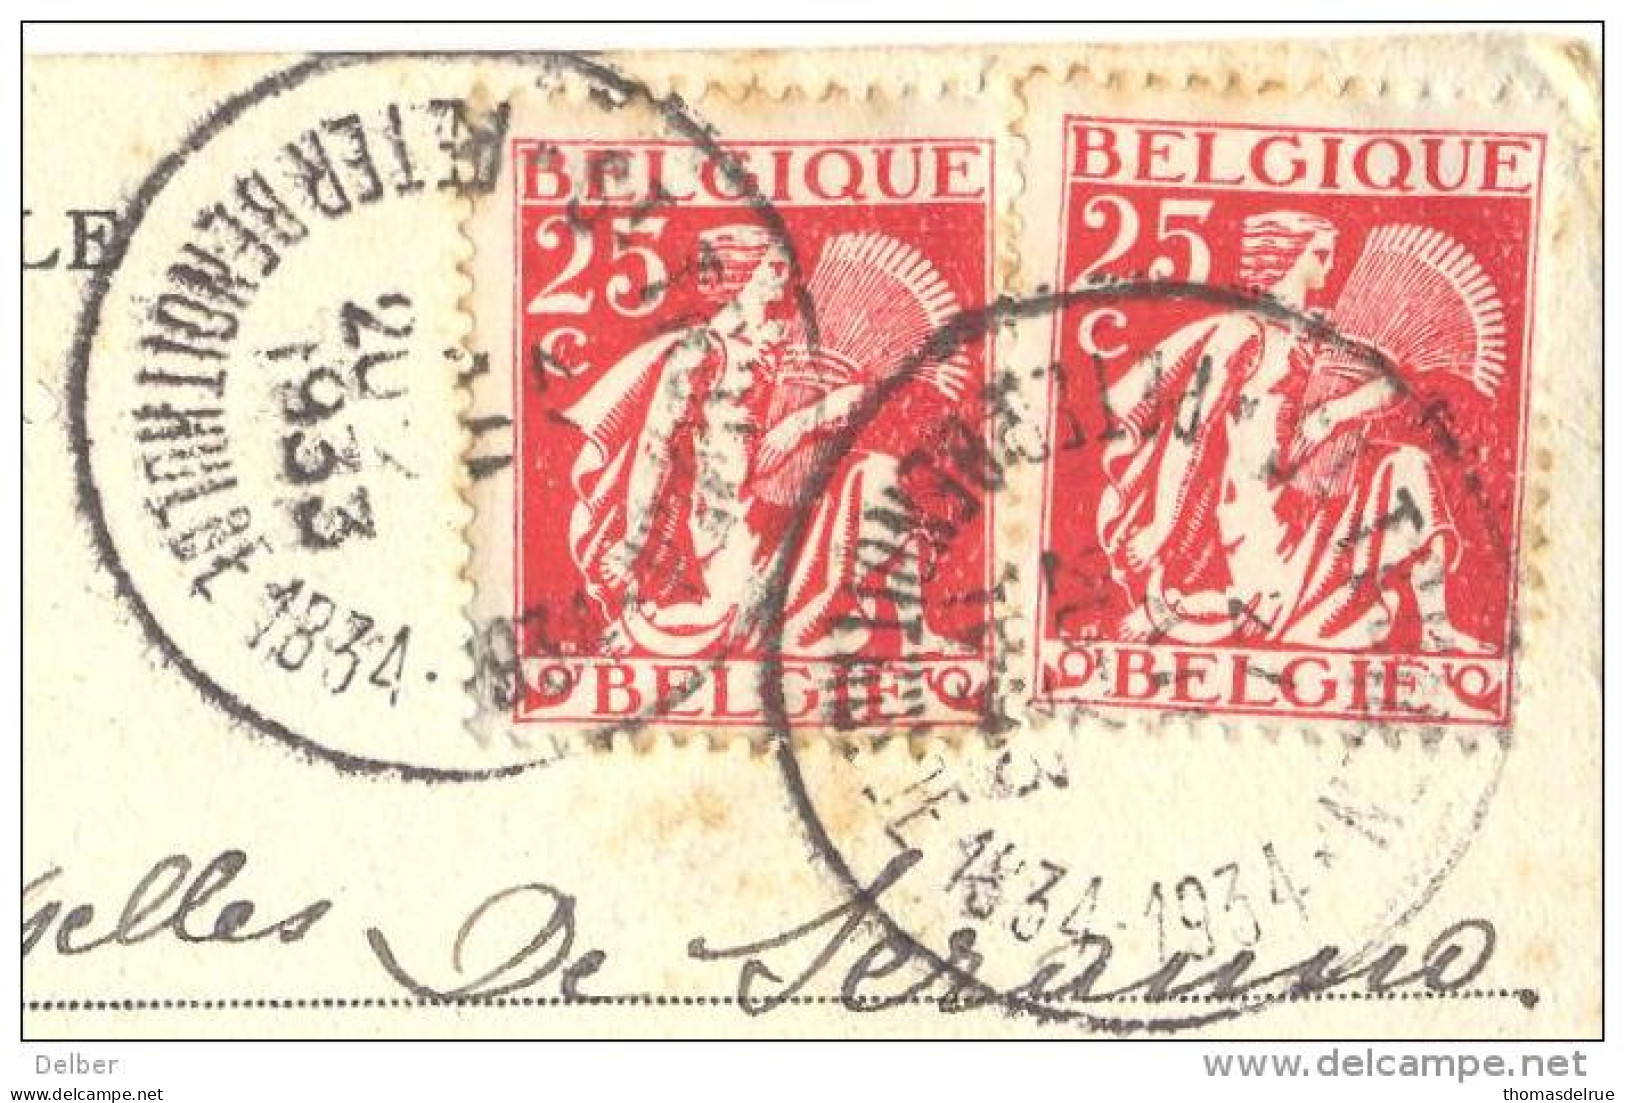 _ik174: N° 339+339::ST-TRUIDEN PETER BENOITHULDE 1834-1934... Op Fantasie Kaartje Met Verknipte Postzegels..HOUYOUX... - 1932 Ceres En Mercurius